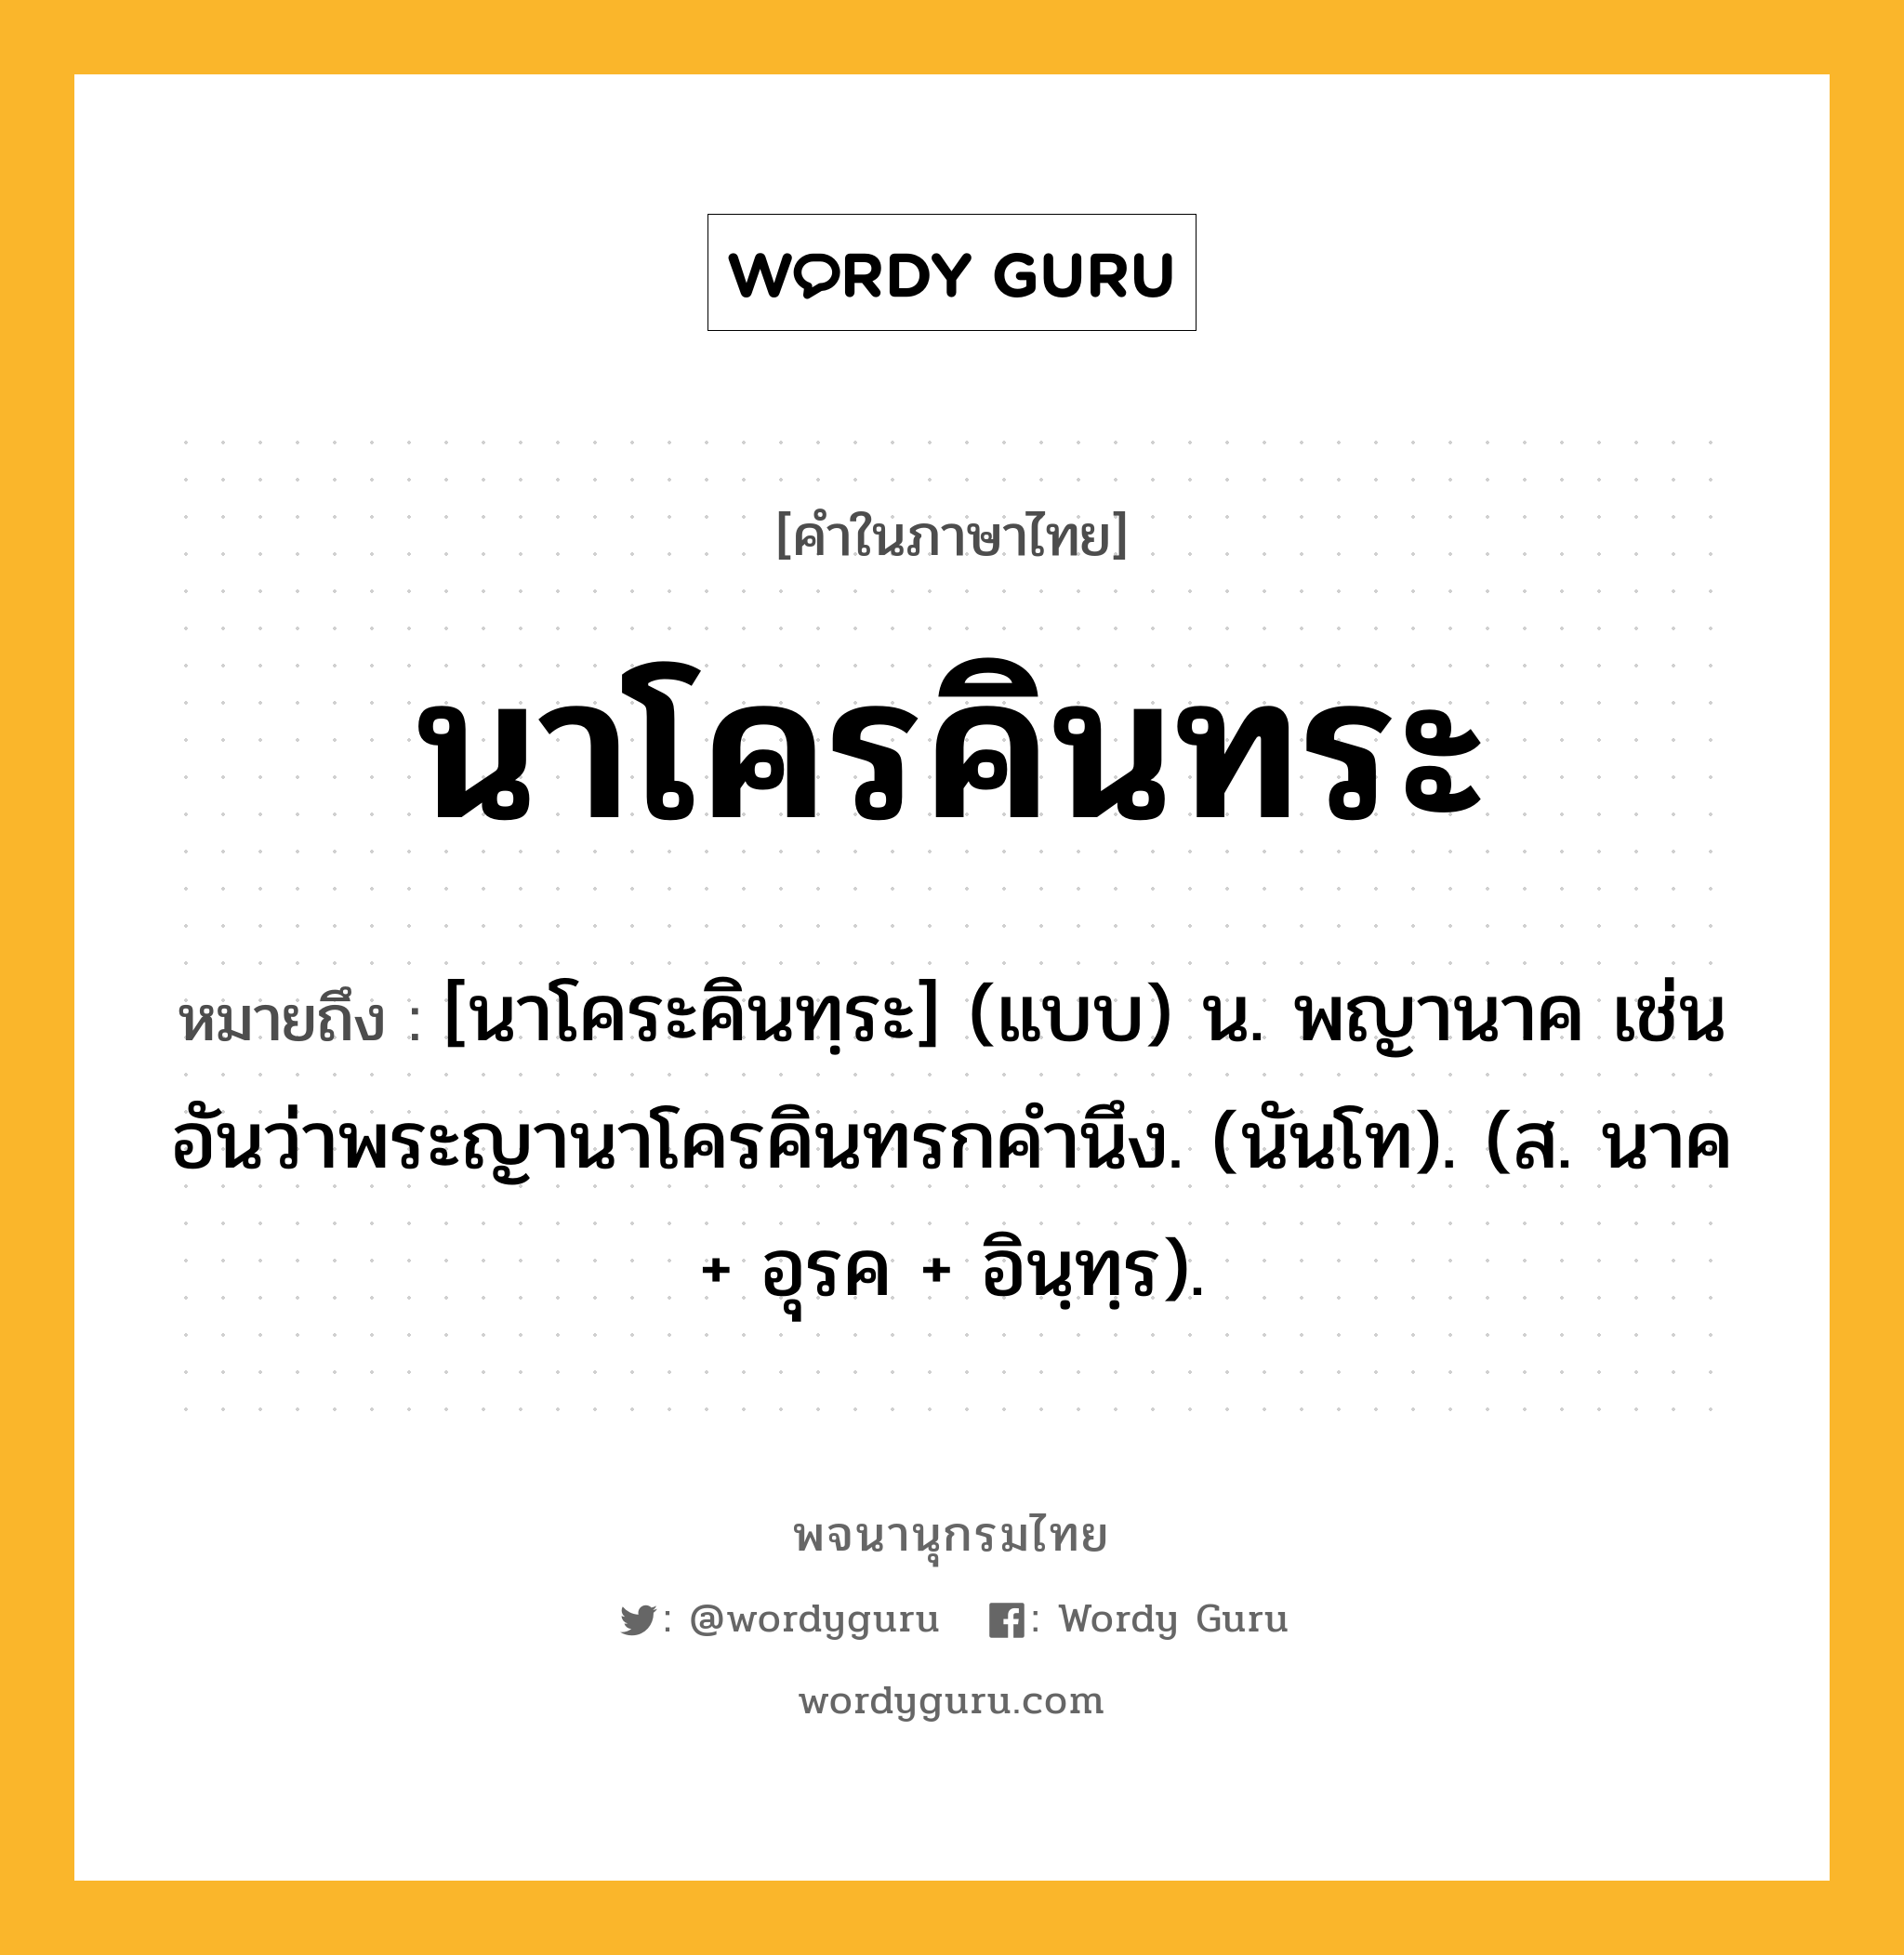 นาโครคินทระ ความหมาย หมายถึงอะไร?, คำในภาษาไทย นาโครคินทระ หมายถึง [นาโคระคินทฺระ] (แบบ) น. พญานาค เช่น อันว่าพระญานาโครคินทรกคํานึง. (นันโท). (ส. นาค + อุรค + อินฺทฺร).